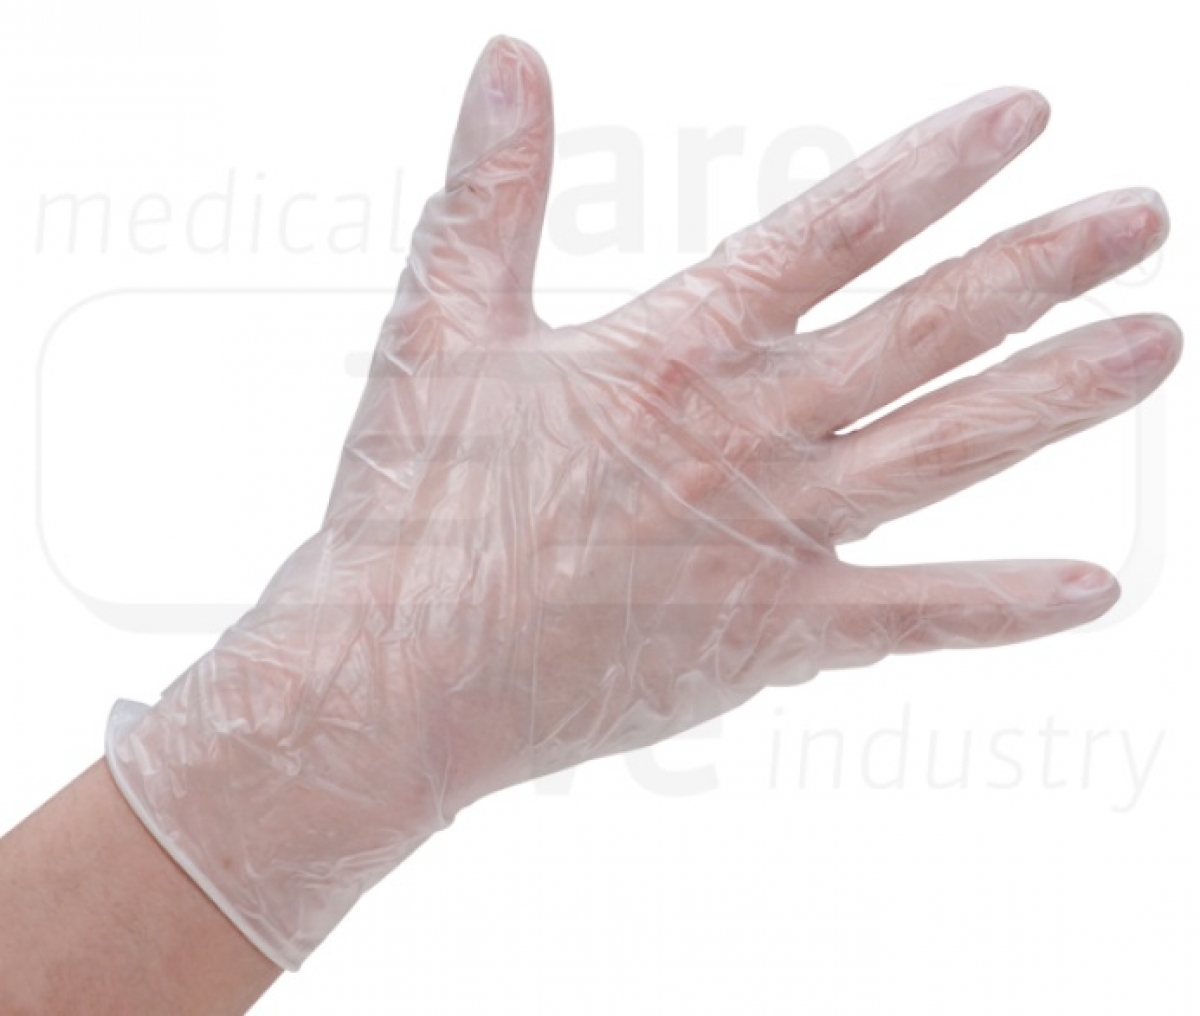 WIROS-Hand-Schutz, Einweg-Vinyl Handschuhe, gepudert, Spenderbox, wei, Pkg  100 Stck, VE = 10 Pkg.